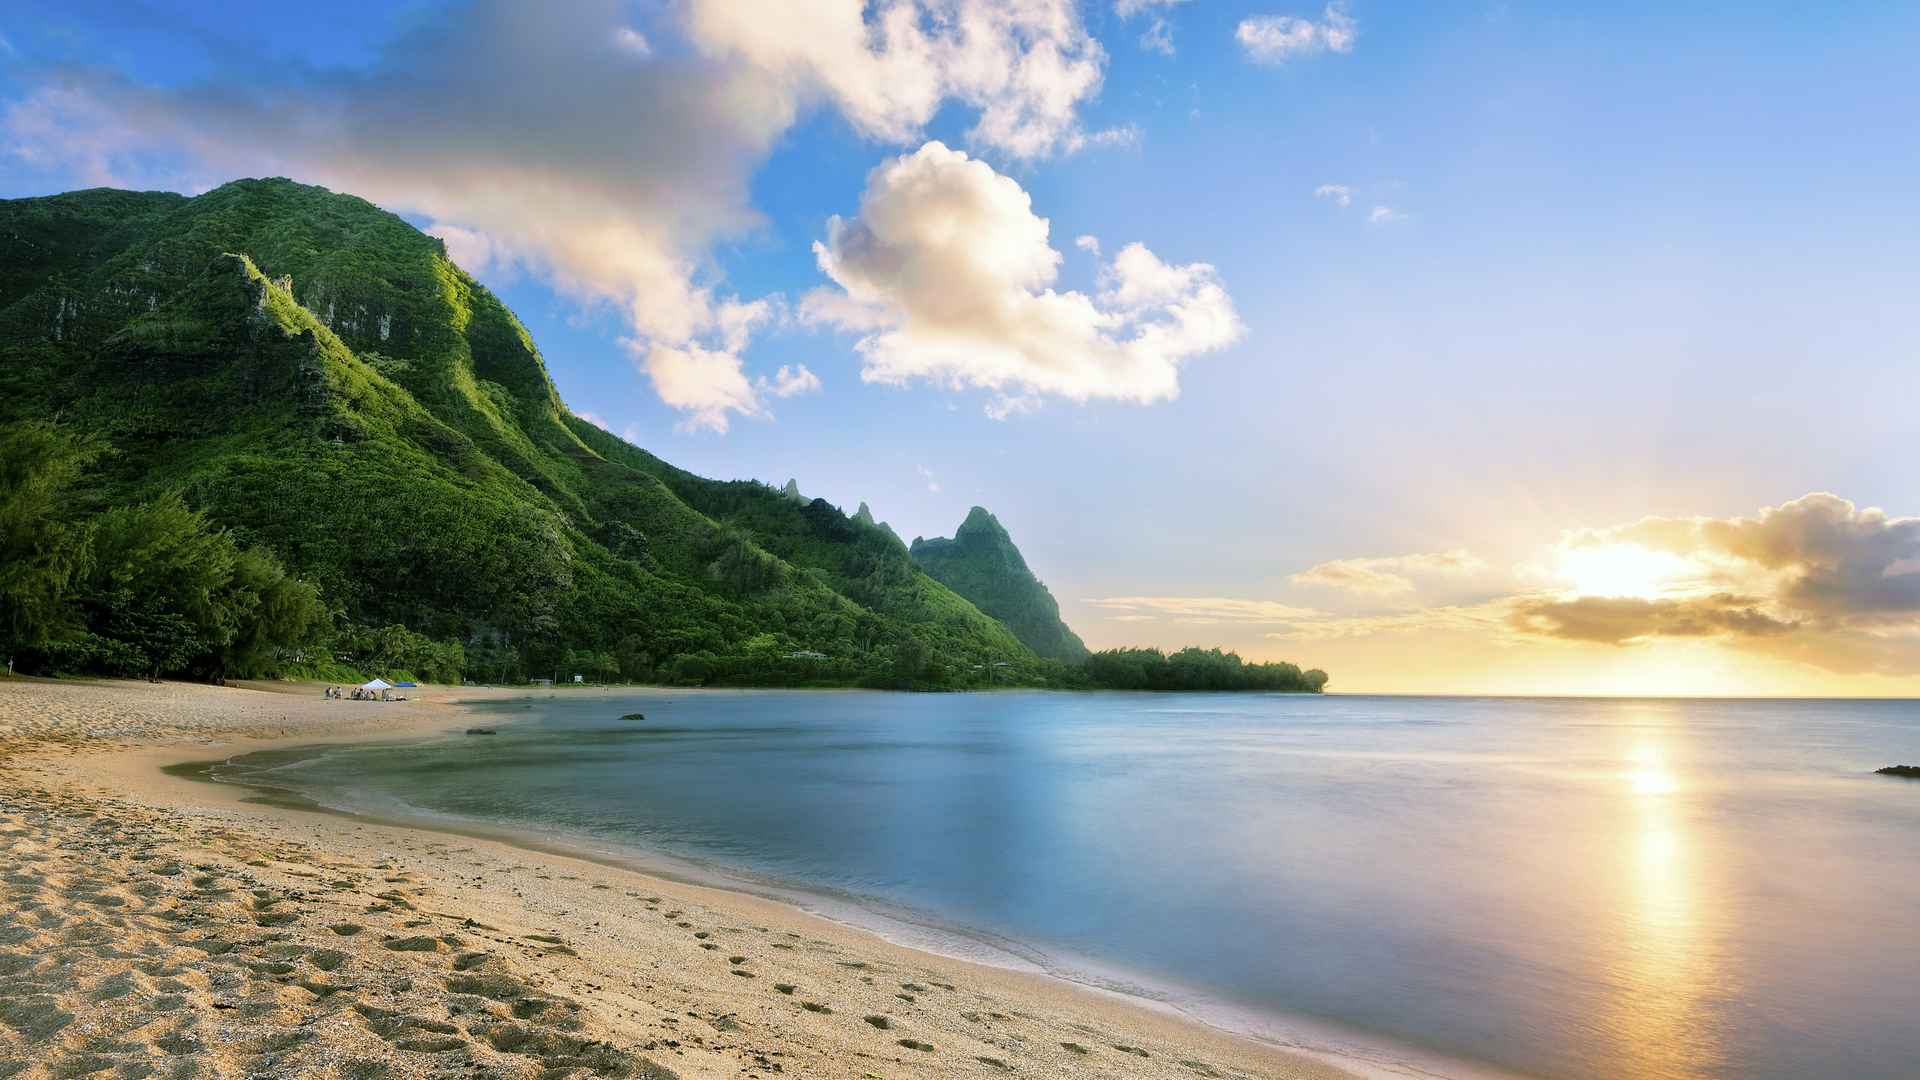 壁纸1280×1024夏威夷可爱岛 鲁玛海海滩壁纸壁纸,地球瑰宝大尺寸自然风景壁纸精选 第一辑壁纸图片-风景壁纸-风景图片素材-桌面壁纸